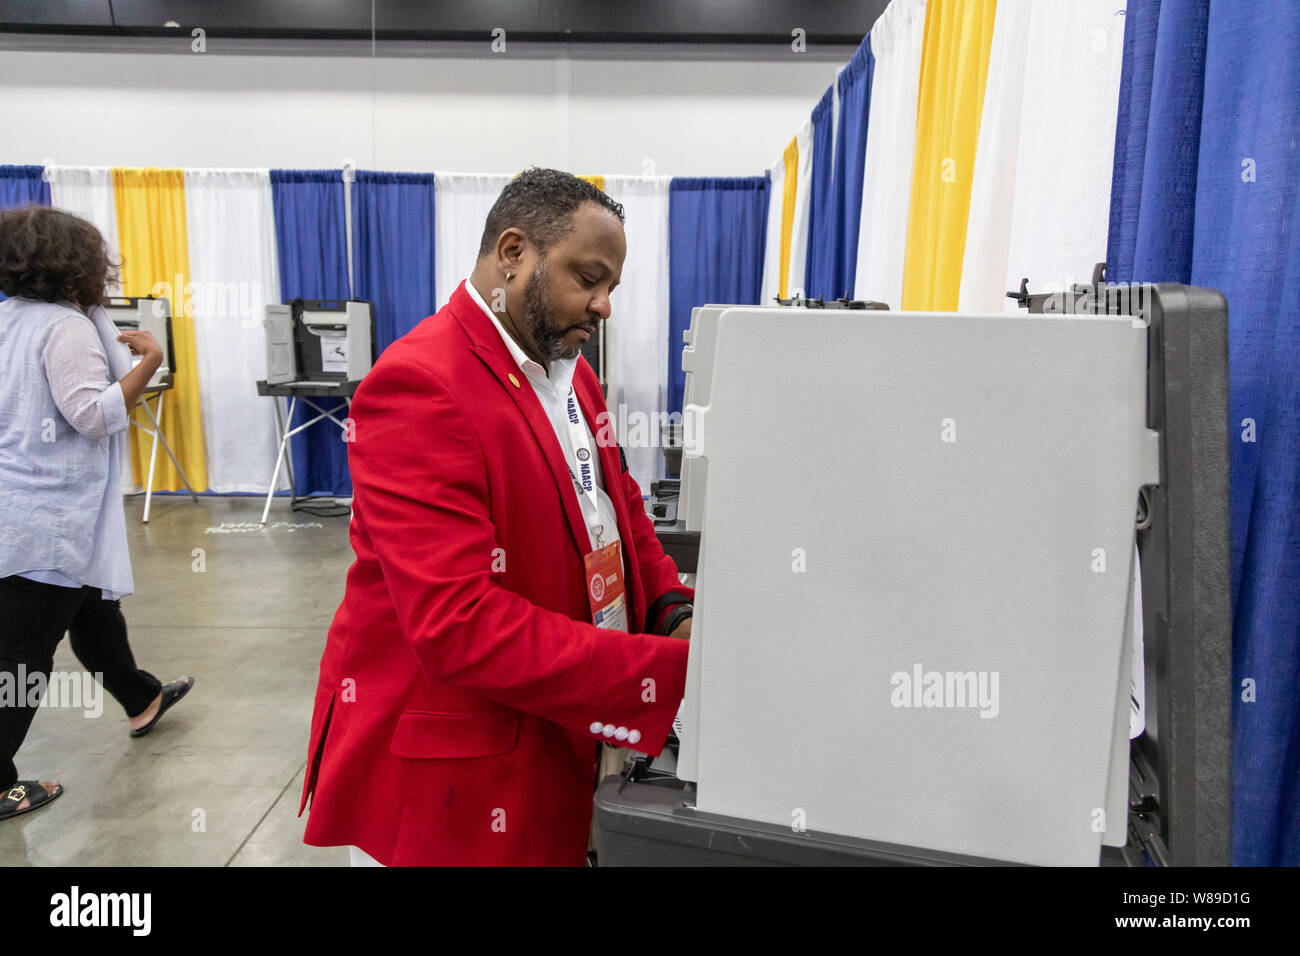 Detroit, Michigan - Los delegados votan por los funcionarios durante la convención anual de la Asociación Nacional para el progreso de la Gente de Color (NAACP, por sus siglas en inglés) Foto de stock